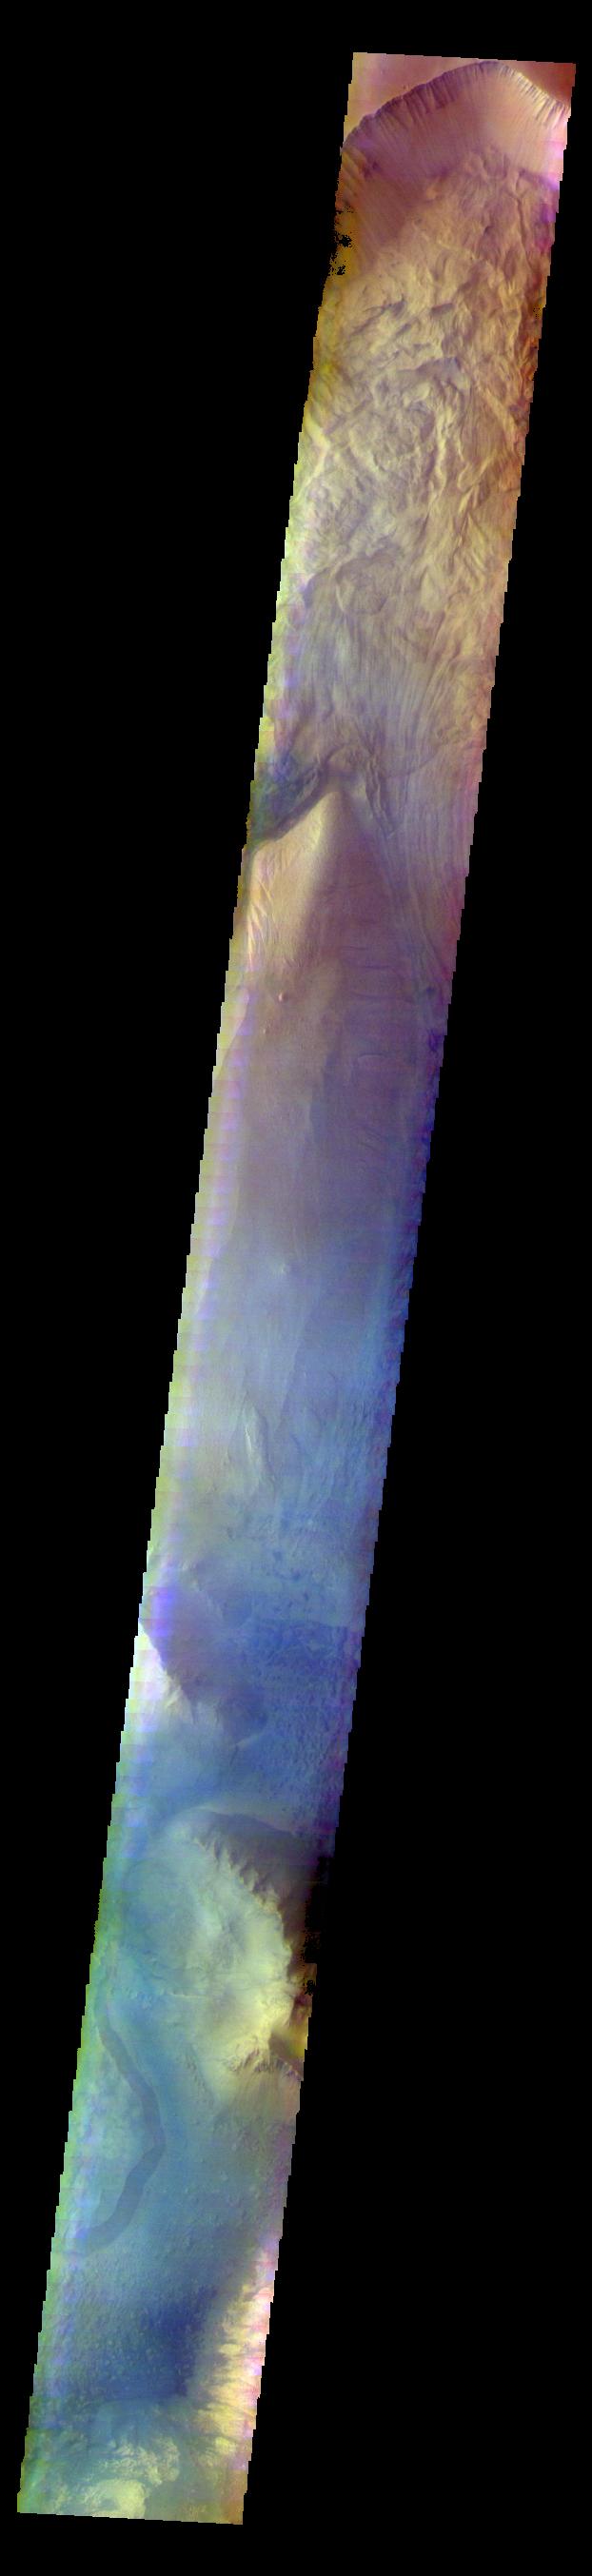 PIA22677: Ophir Chasma - False Color